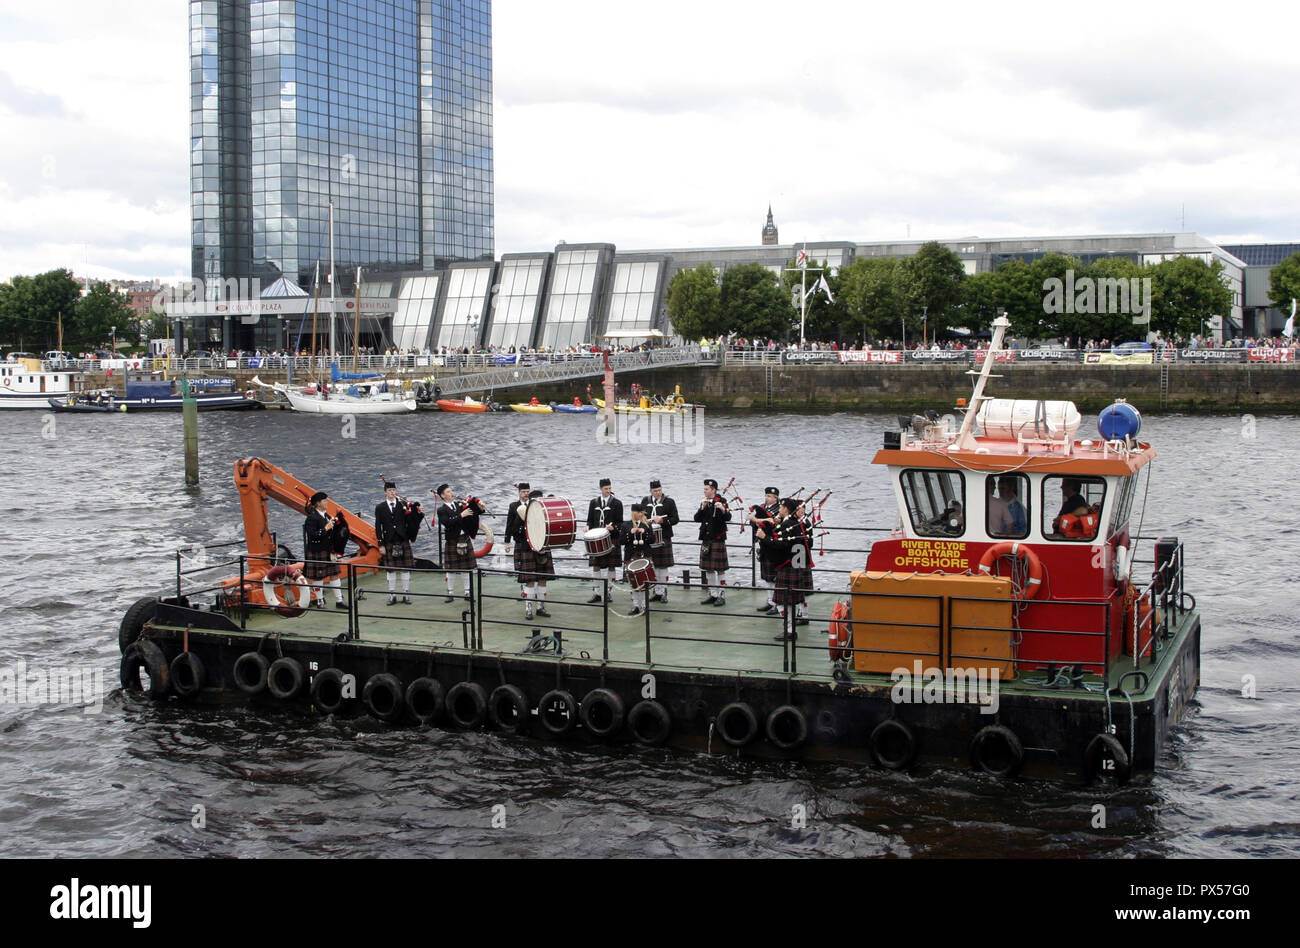 Dans le cadre de la rivière Glasgow Festival, un pipe band traditionnel prend à l'eau pour amuser les spectateurs sur les rives à Glasgow, Ecosse Banque D'Images